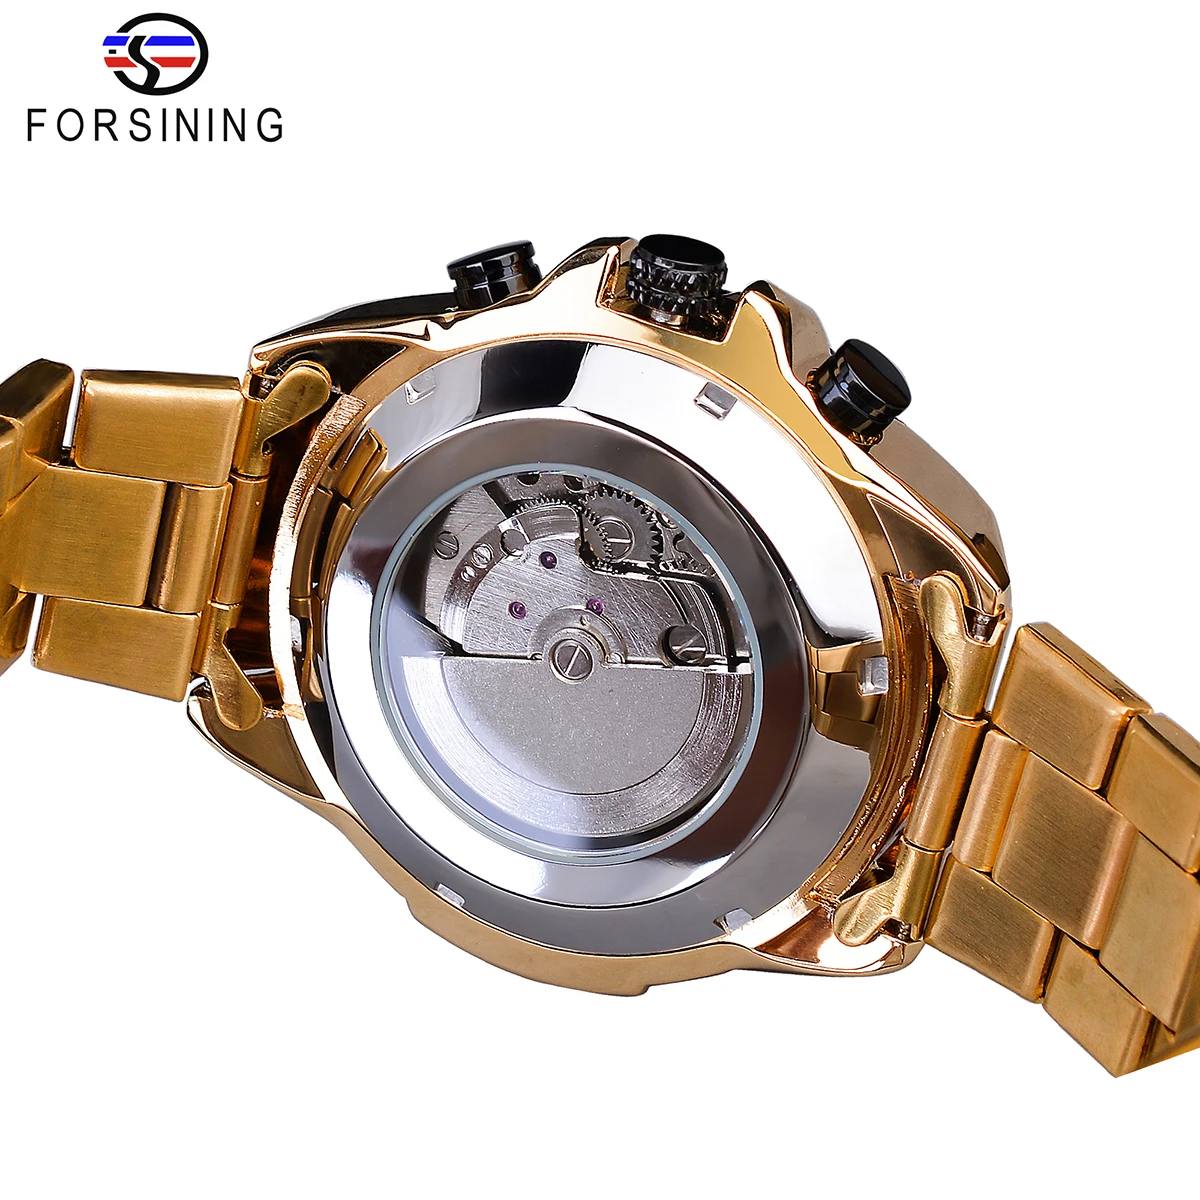 Forsining золотые автоматические часы для мужчин функция даты механические часы Relogio Masculino Стальные наручные часы водонепроницаемые мужские часы